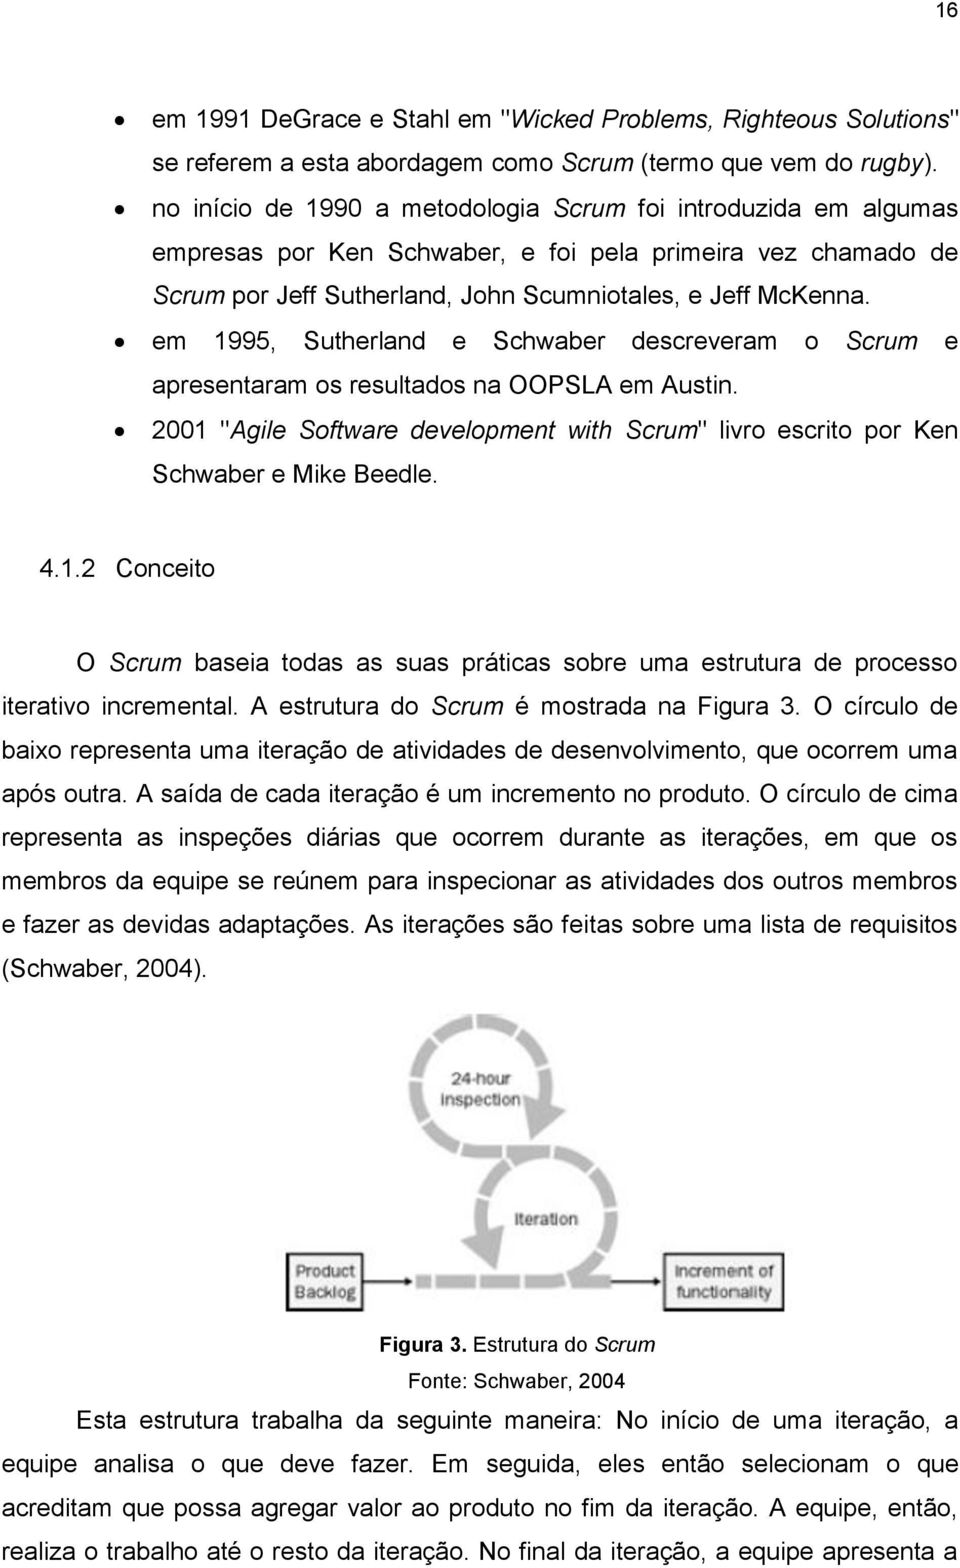 em 1995, Sutherland e Schwaber descreveram o Scrum e apresentaram os resultados na OOPSLA em Austin. 2001 "Agile Software development with Scrum" livro escrito por Ken Schwaber e Mike Beedle. 4.1.2 Conceito O Scrum baseia todas as suas práticas sobre uma estrutura de processo iterativo incremental.